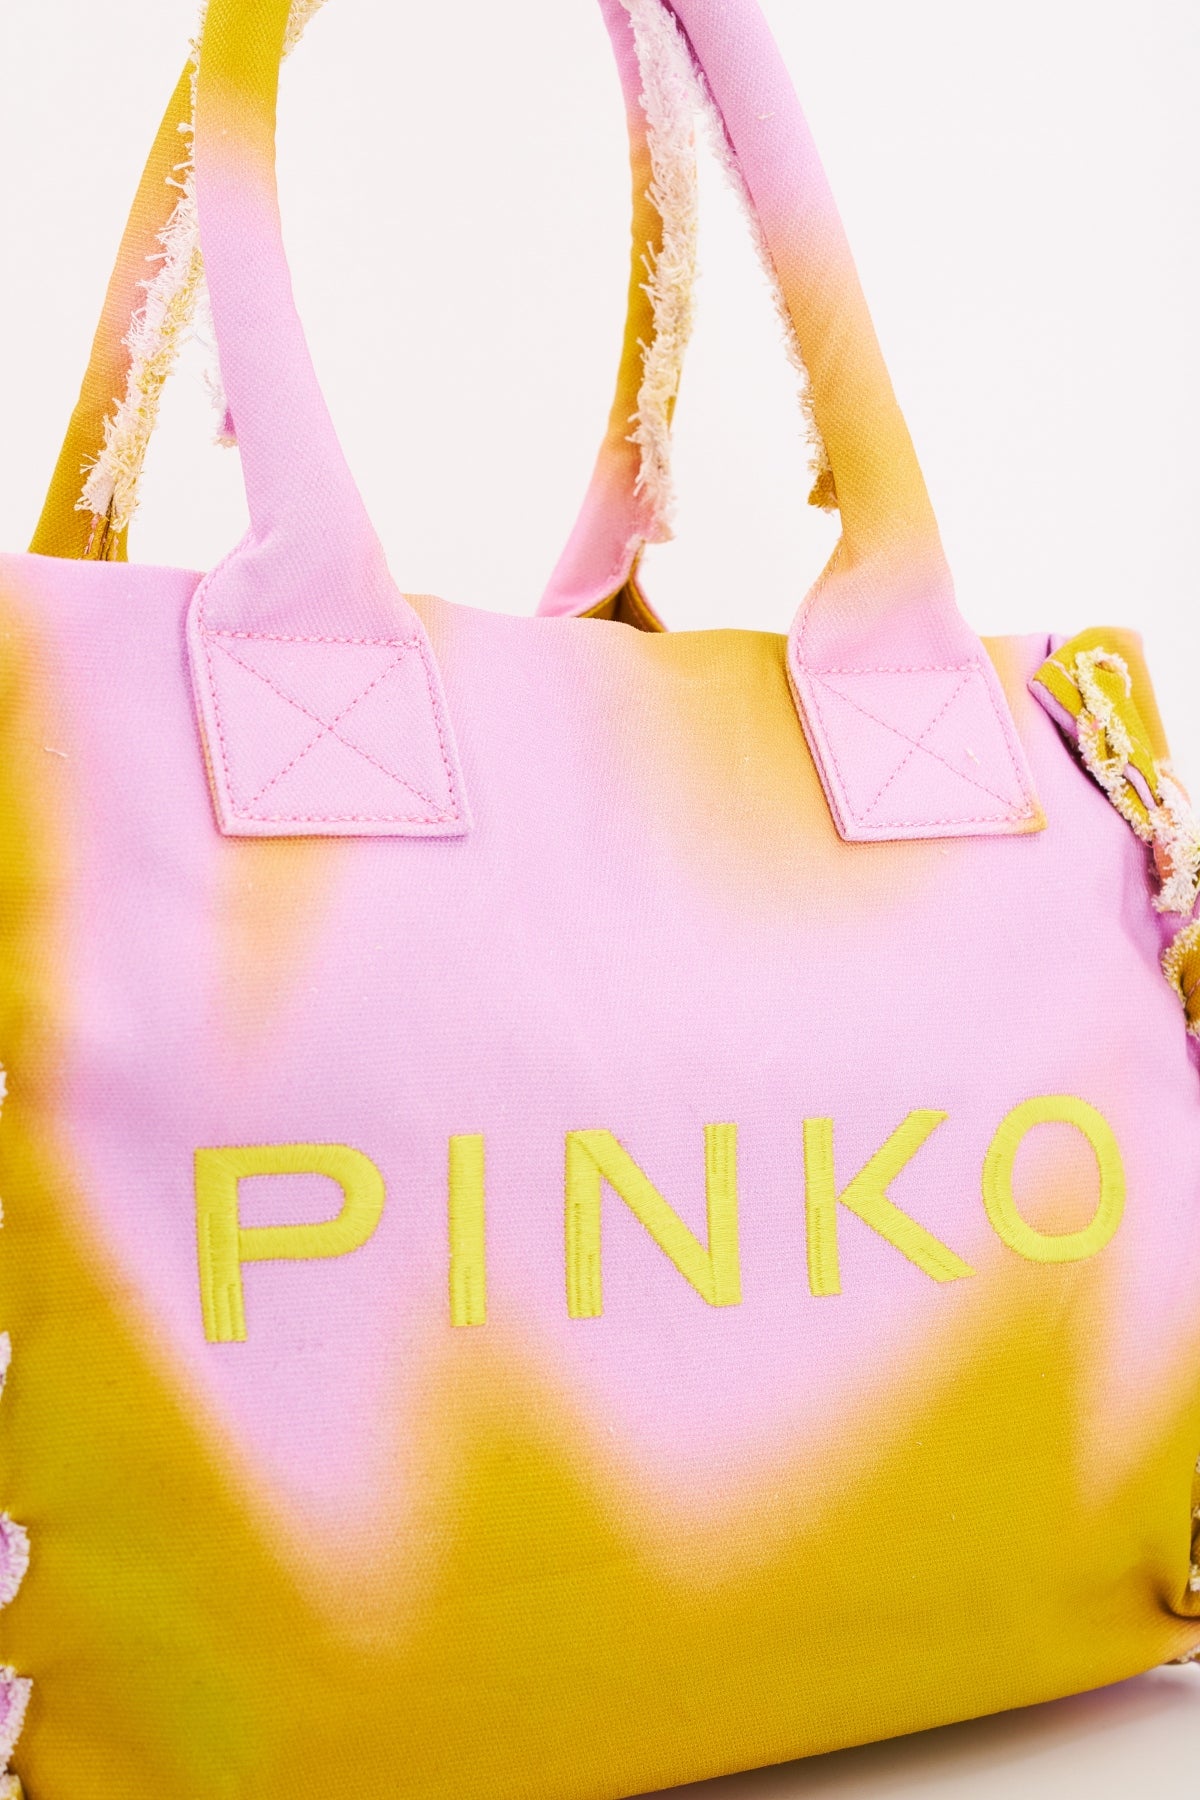 PINKO  en color ROSA  (4)